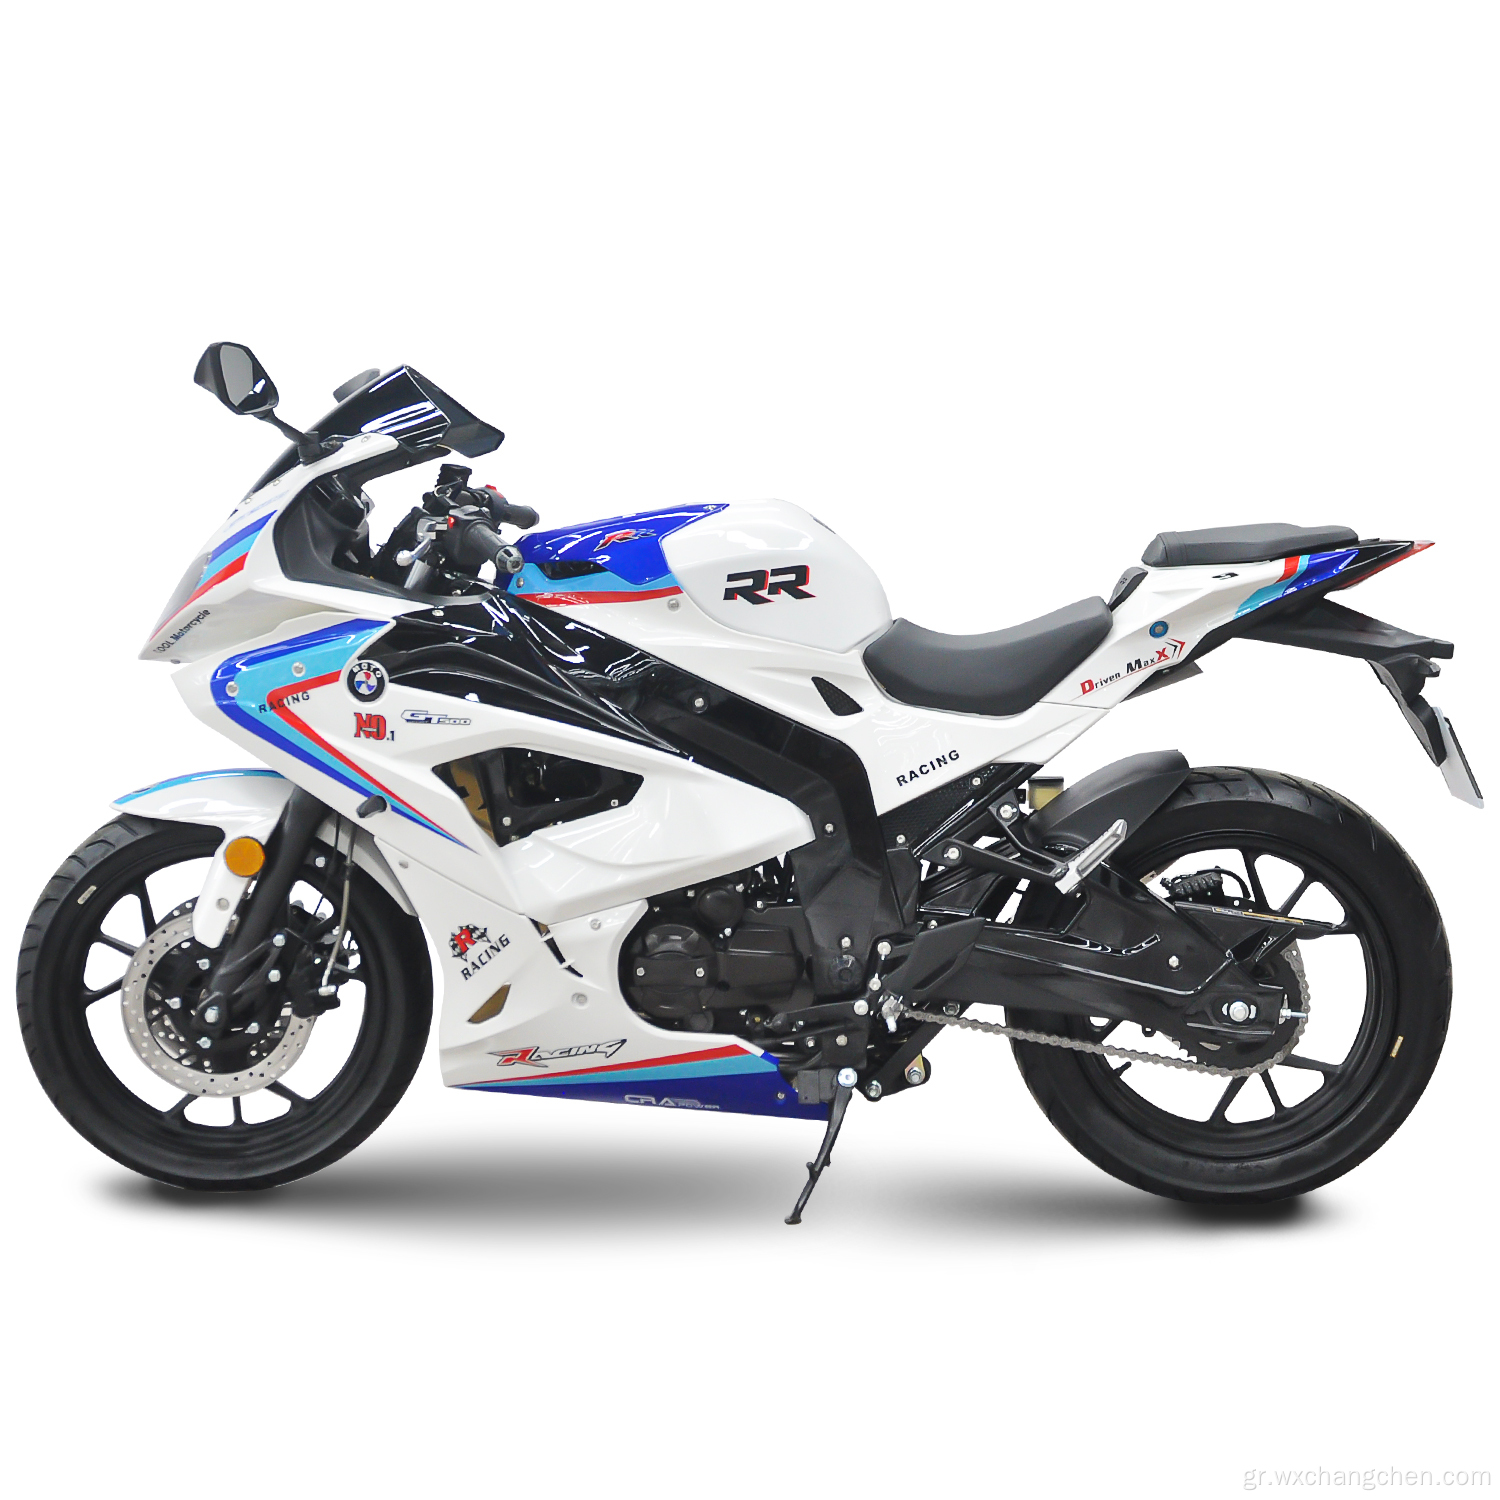 400cc μοτοσικλέτες φυσικό αέριο 250cc στυλ μοτοσικλέτας αερίου Νέο σκούτερ βενζίνης